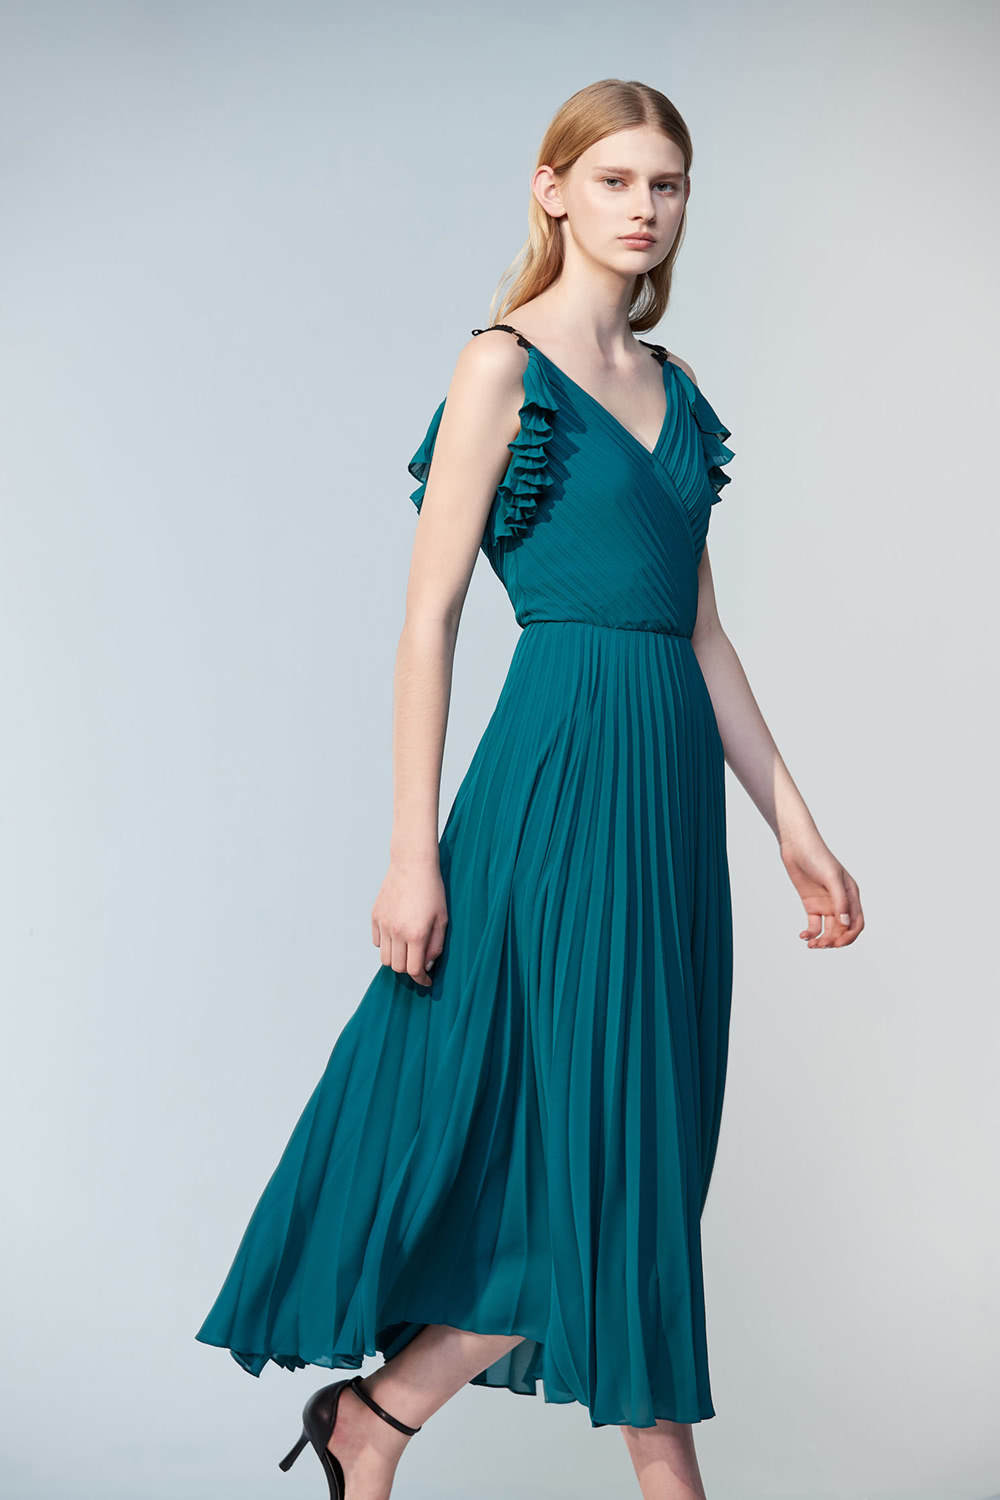 iROO 藍綠色雪紡壓褶洋裝品牌優惠